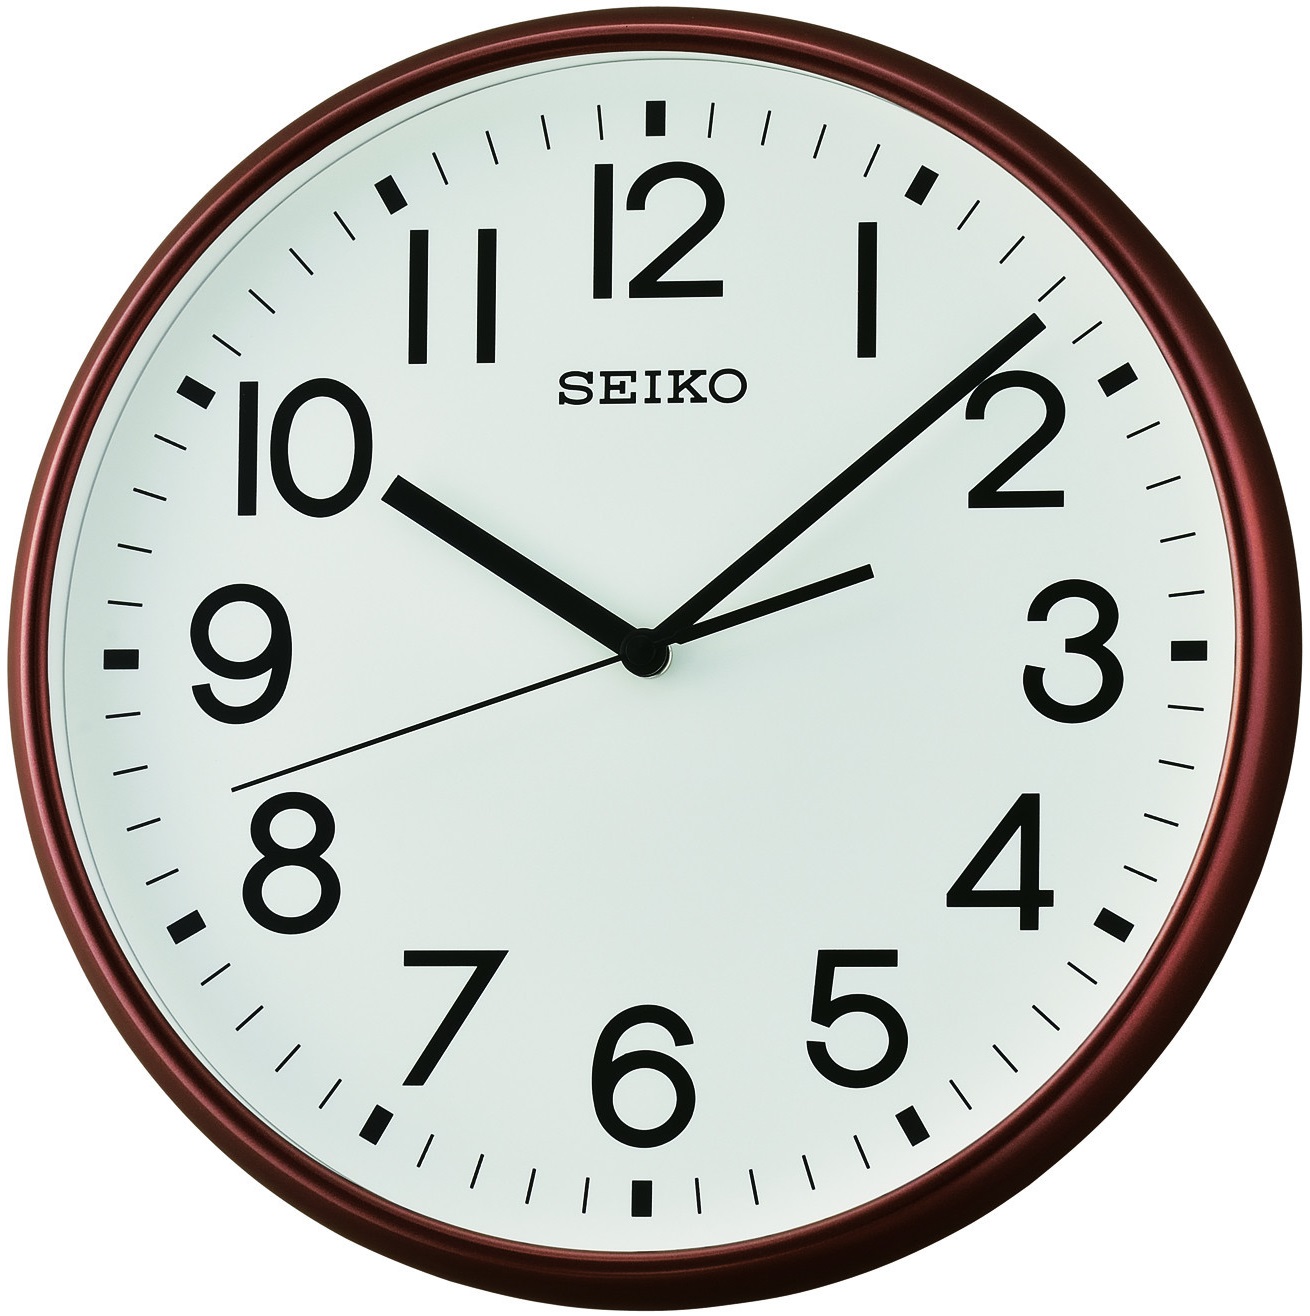 Настенные часы 9. Часы настенные Seiko qxa676s. Настенные часы Seiko qxa418s. Настенные часы Seiko qxa675zn. Rhythm cmg135nr06.